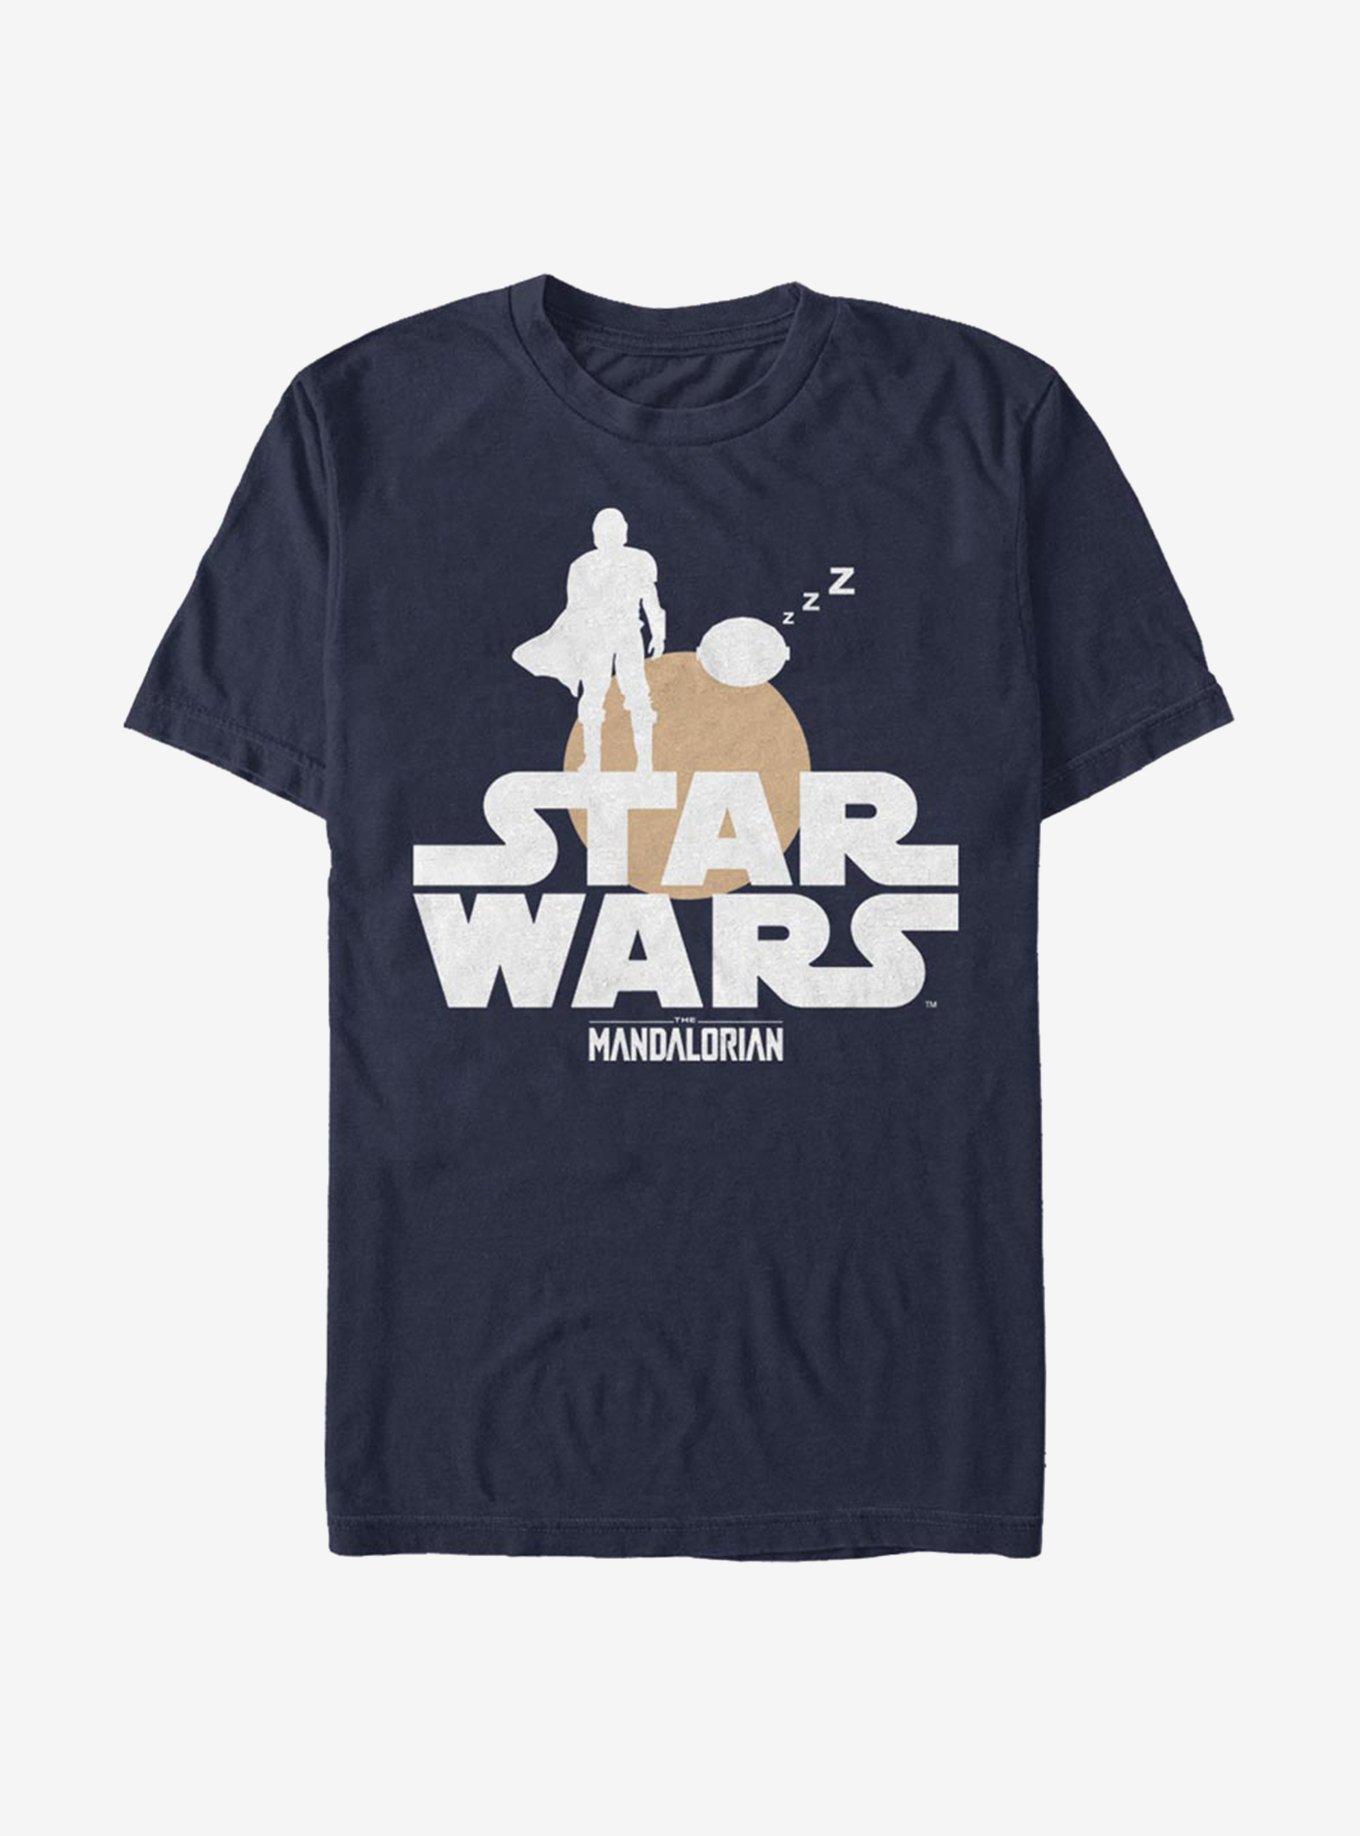 Star Wars The Mandalorian Sunset Duo T-Shirt, NAVY, hi-res